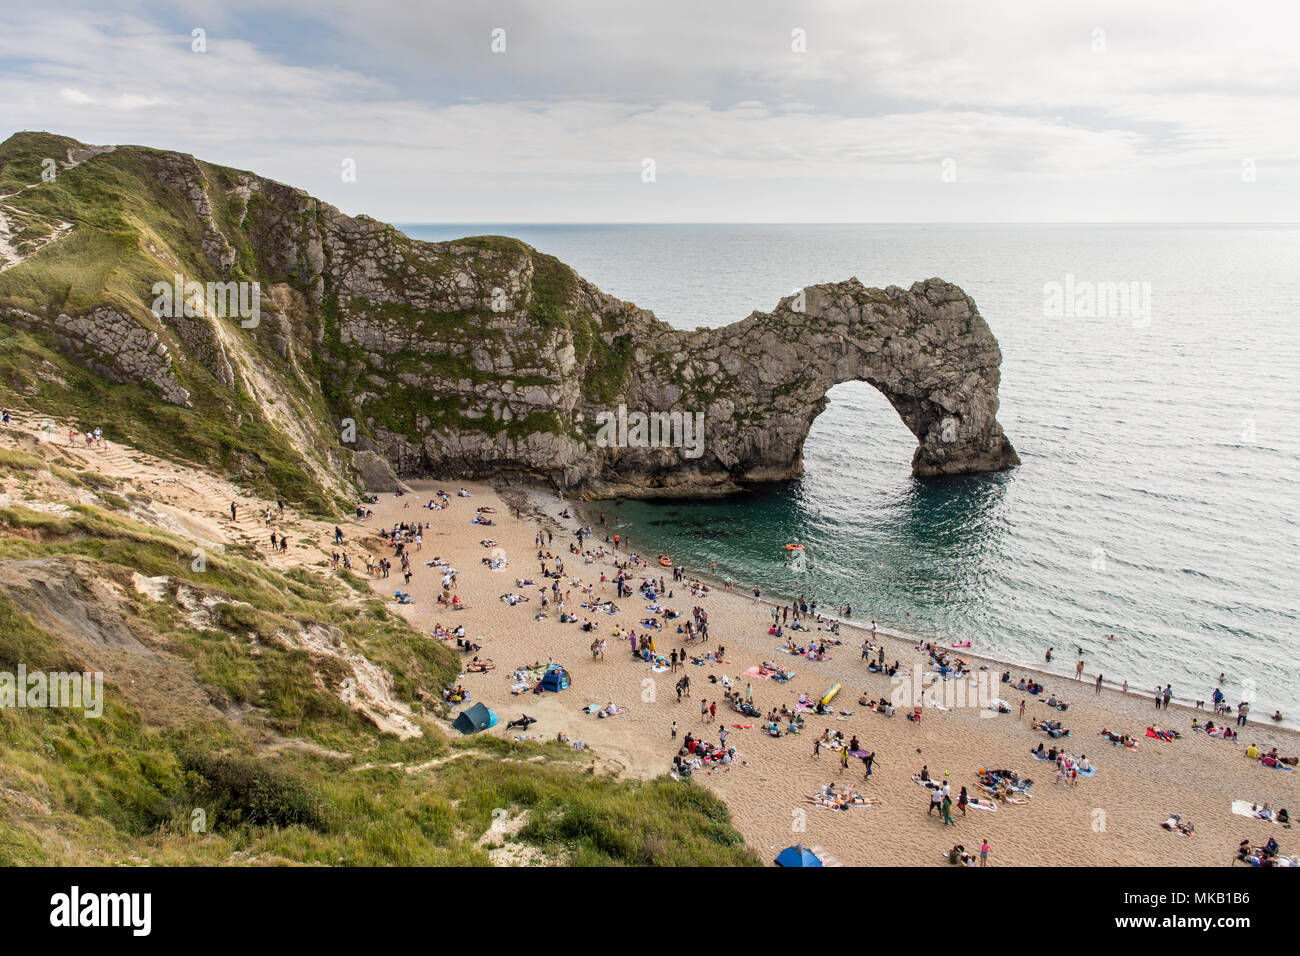 Dorset, Angleterre, Royaume-Uni - 13 août 2016 : Les vacanciers baignoire à Durdle Door calcaire naturel arch, un honeypot touristique sur la côte jurassique monde Herita Banque D'Images